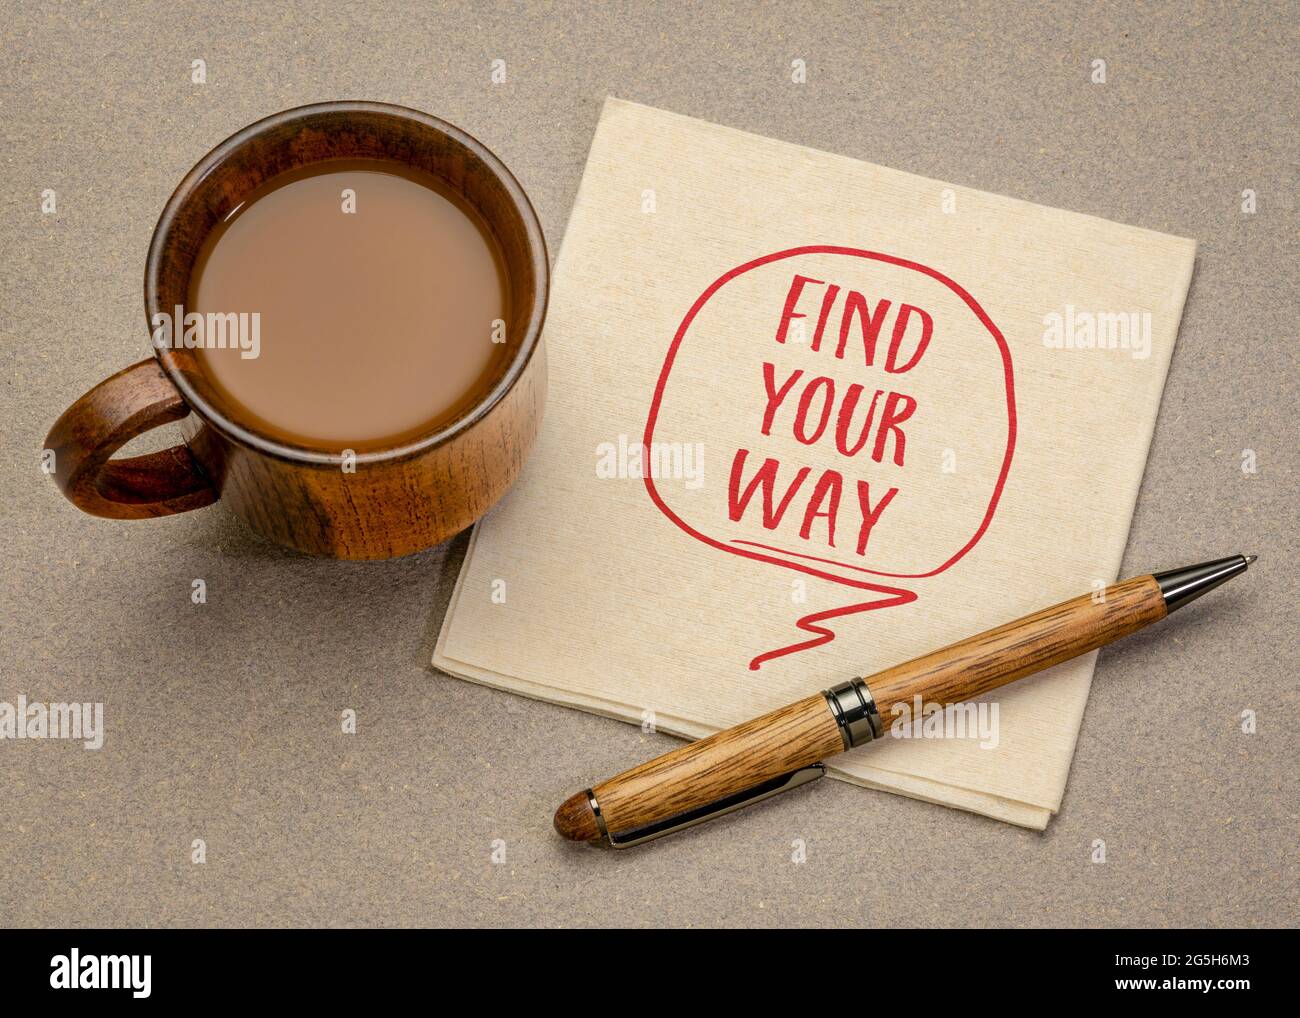 Finden Sie Ihren Weg Beratung oder Erinnerung - Handschrift auf einer Serviette mit einer Tasse Kaffee, Leben, Karriere und persönliches Entwicklungskonzept Stockfoto